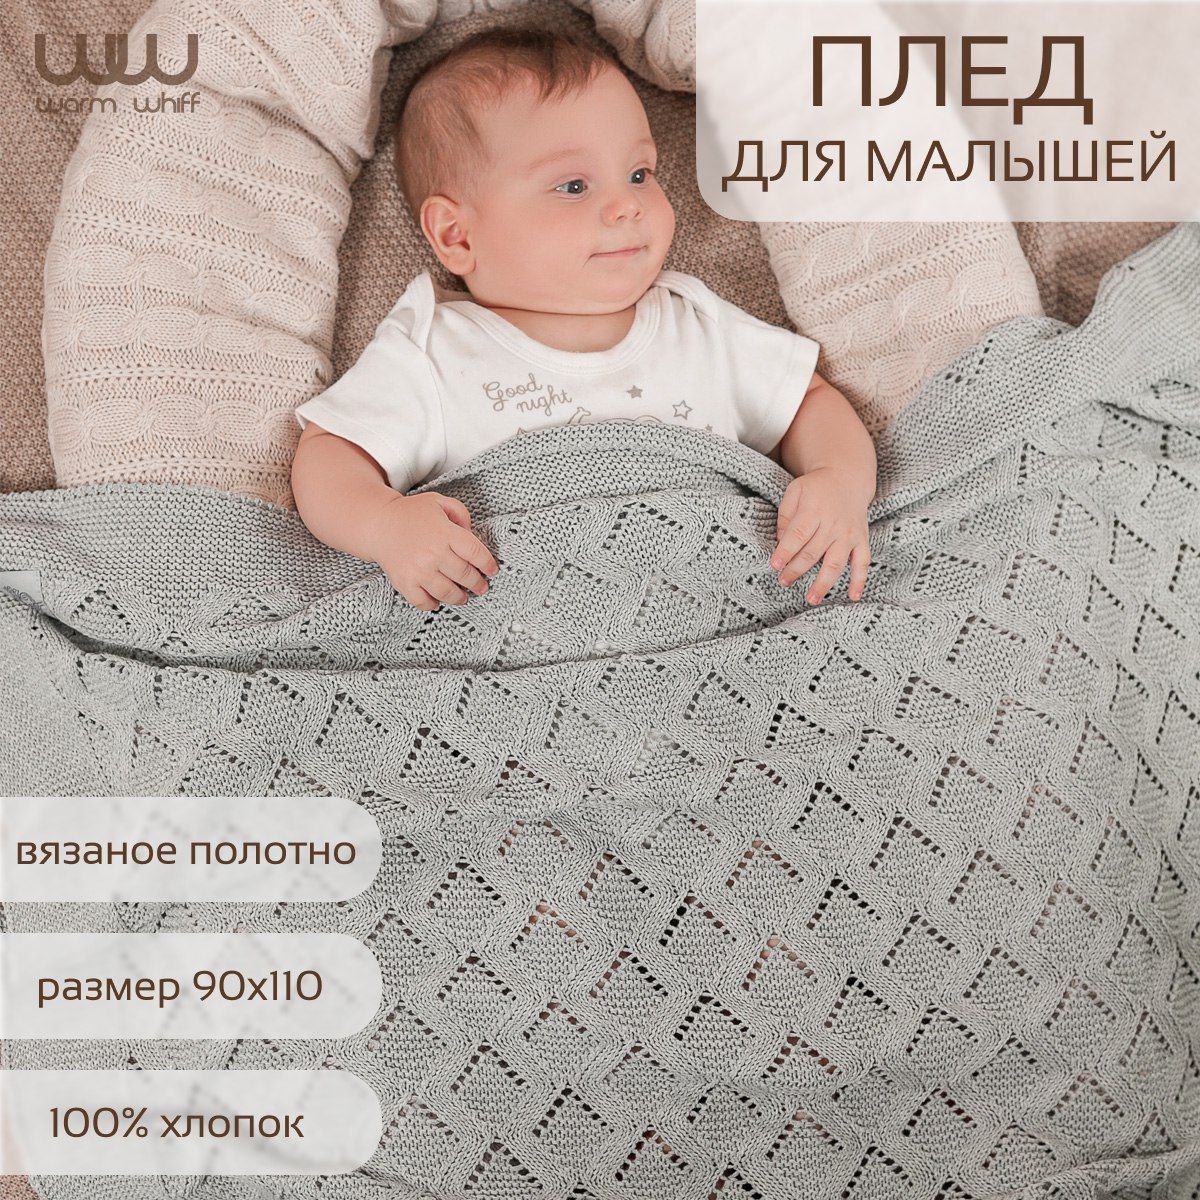 Детские пледы - купить детский плед для ребенка в Украине, Киеве - интернет магазин Velaris